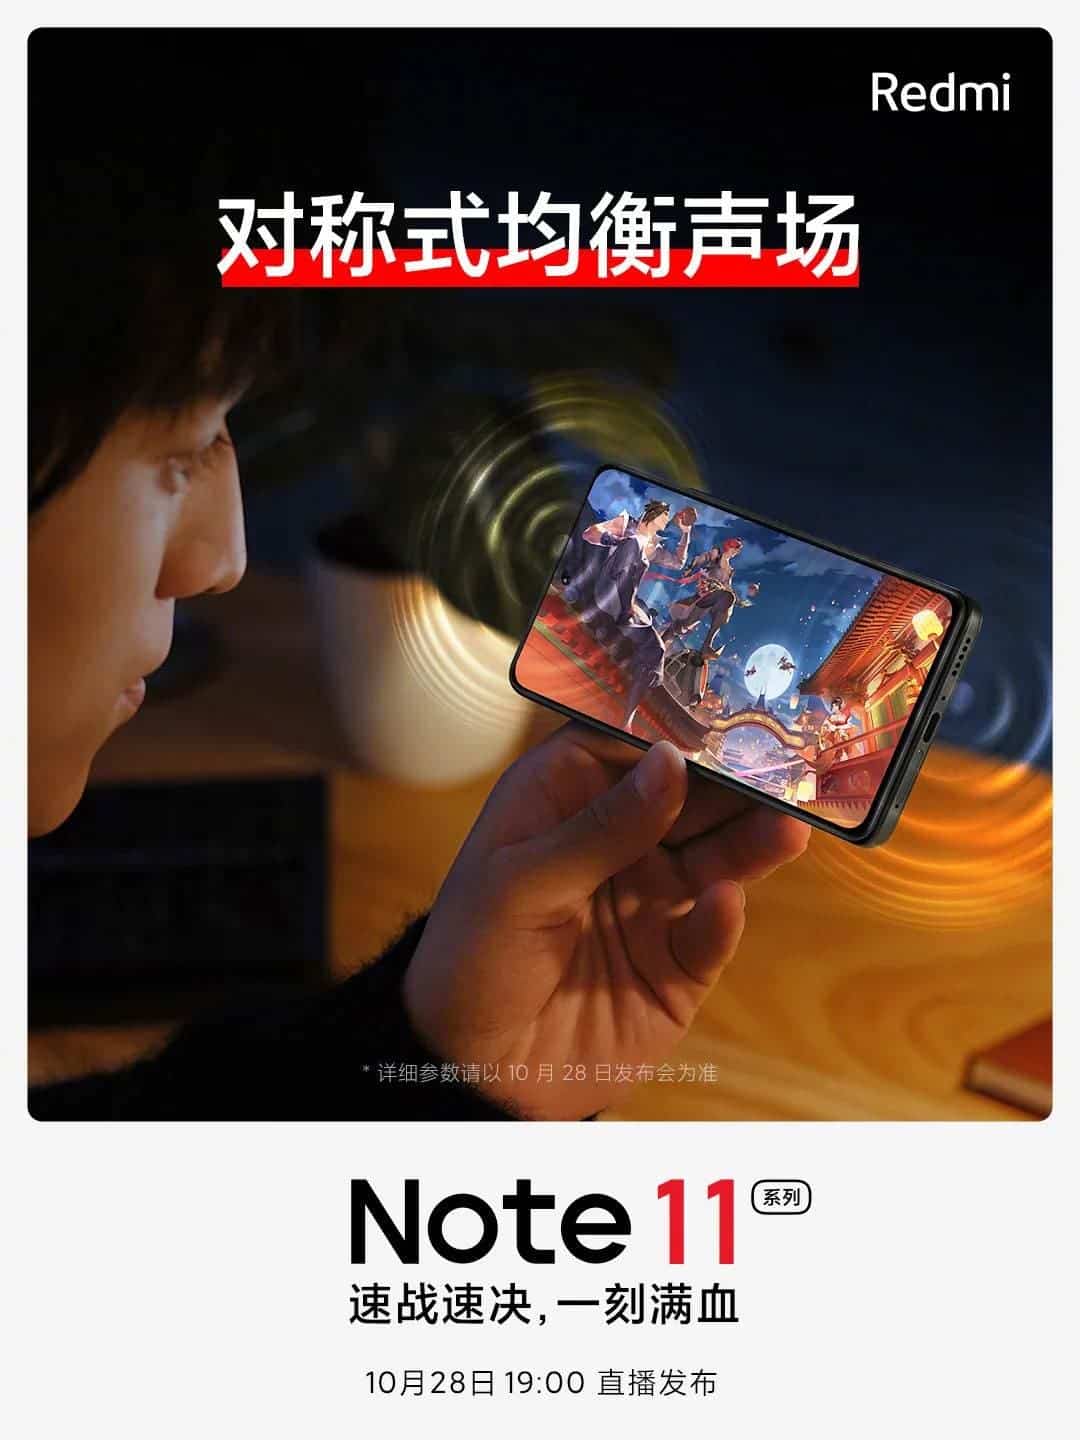 Affiche promotionnelle Redmi Note 11 Pro_2